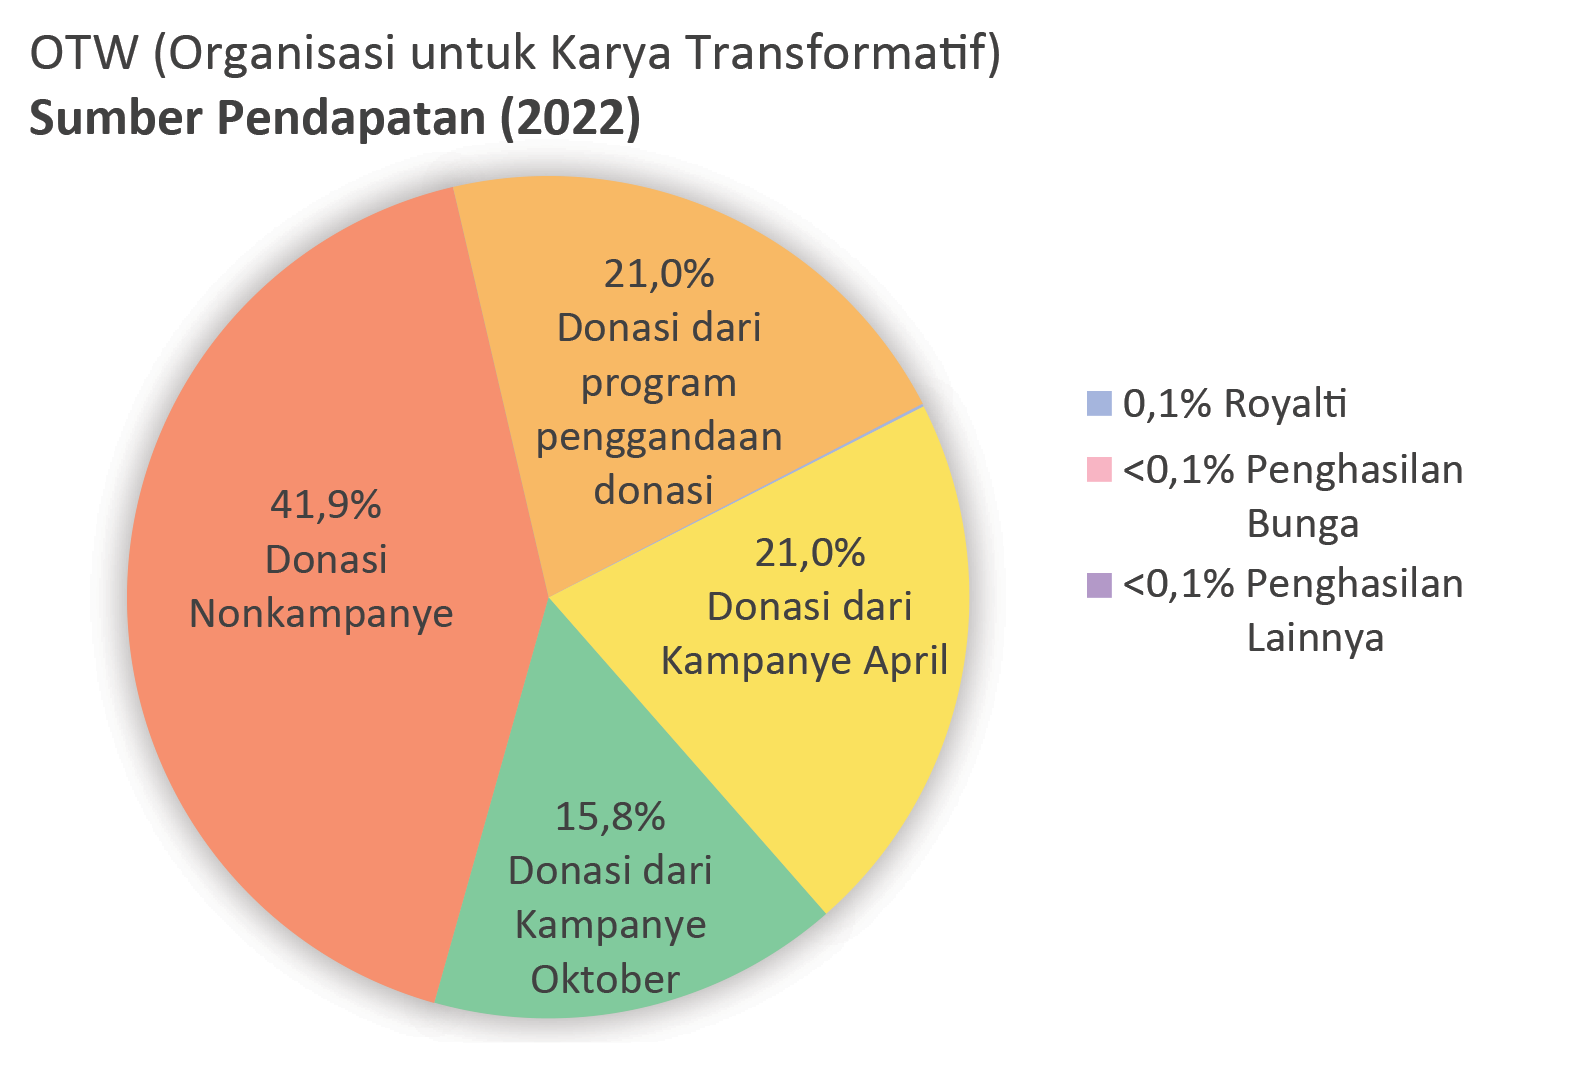 Pemasukan OTW: Kampanye donasi April: 21,0%. Kampanye donasi Oktober: 15,8%. Donasi nonkampanye: 41,9%. Donasi dari program penggandaan donasi: 21,0%. Pendapatan bunga: <0,1%. Royalti: 0,1%. Pendapatan Lainnya: <0,1%.